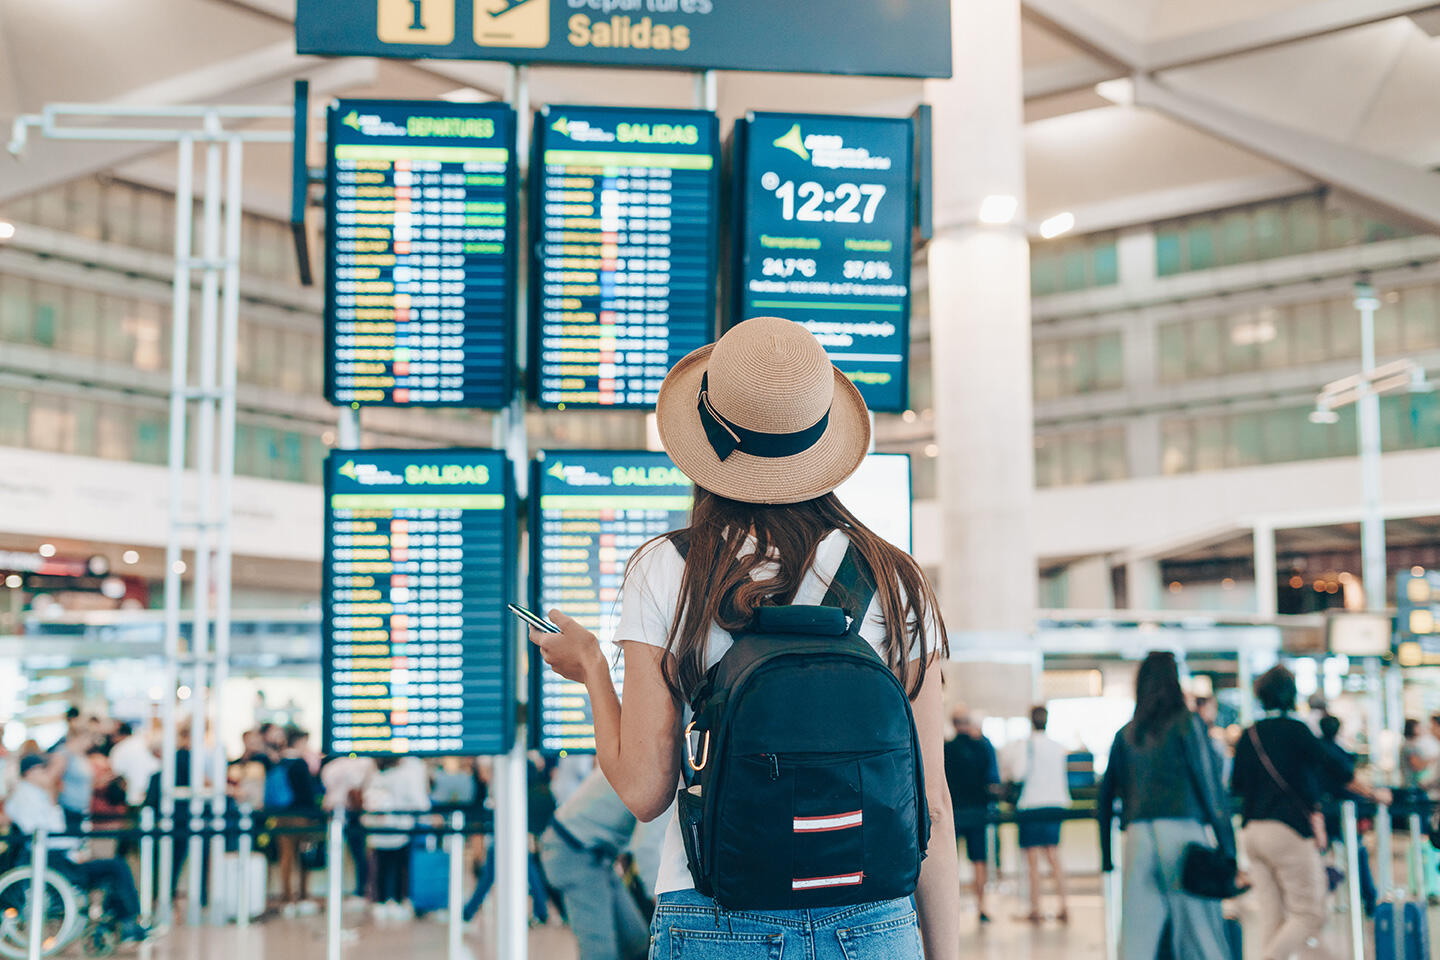 Frau von hinten mit Hut und Rucksack, die ihr Telefon vor der Abflugtafel am Flughafen Bordeaux überprüft.